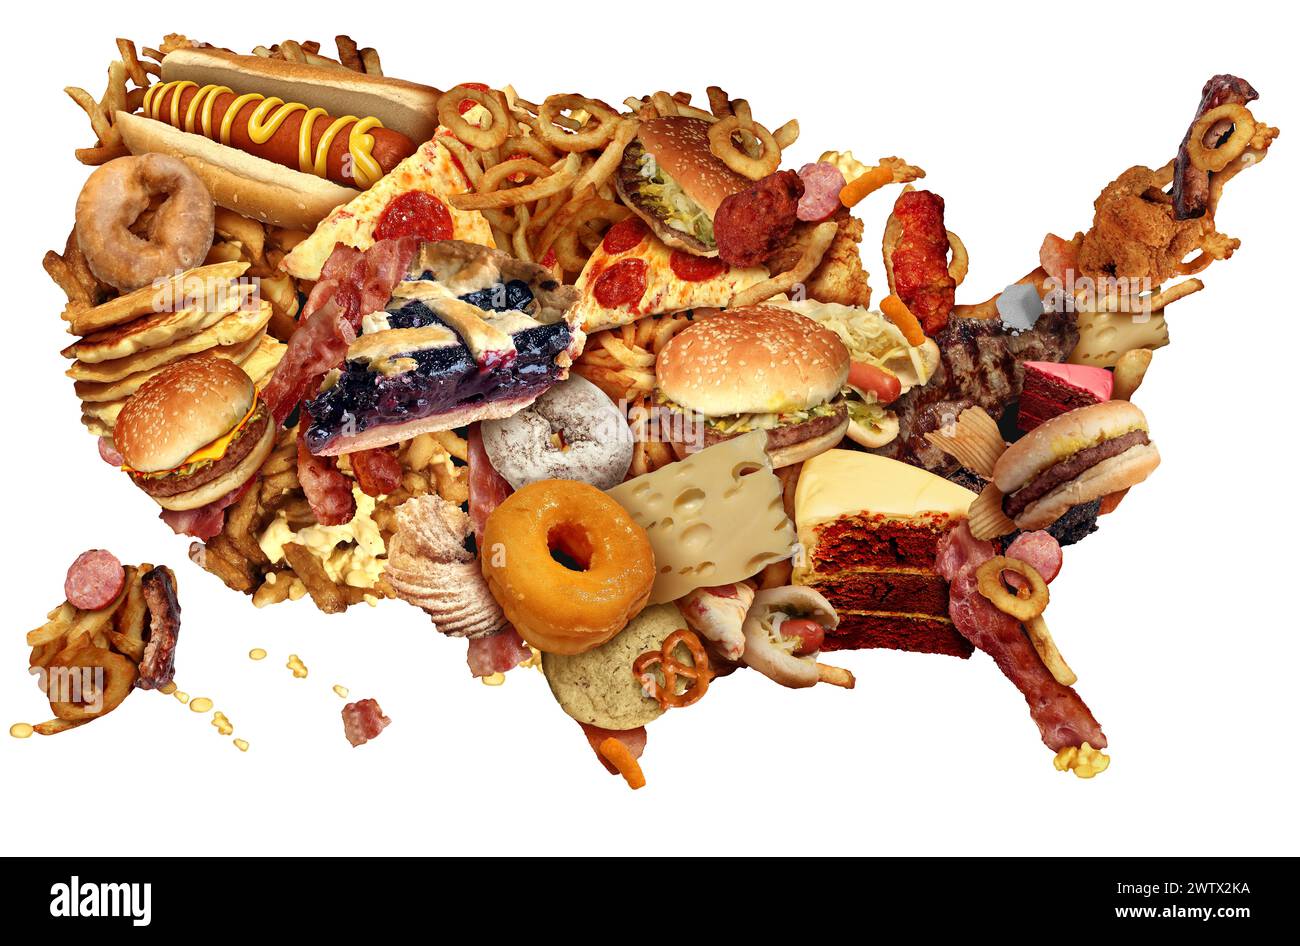 US Junk Food Diet come una malsana abitudini alimentari americane che rappresentano l'obesità degli Stati Uniti e le abitudini alimentari di colesterolo alto grasso come un americano h Foto Stock